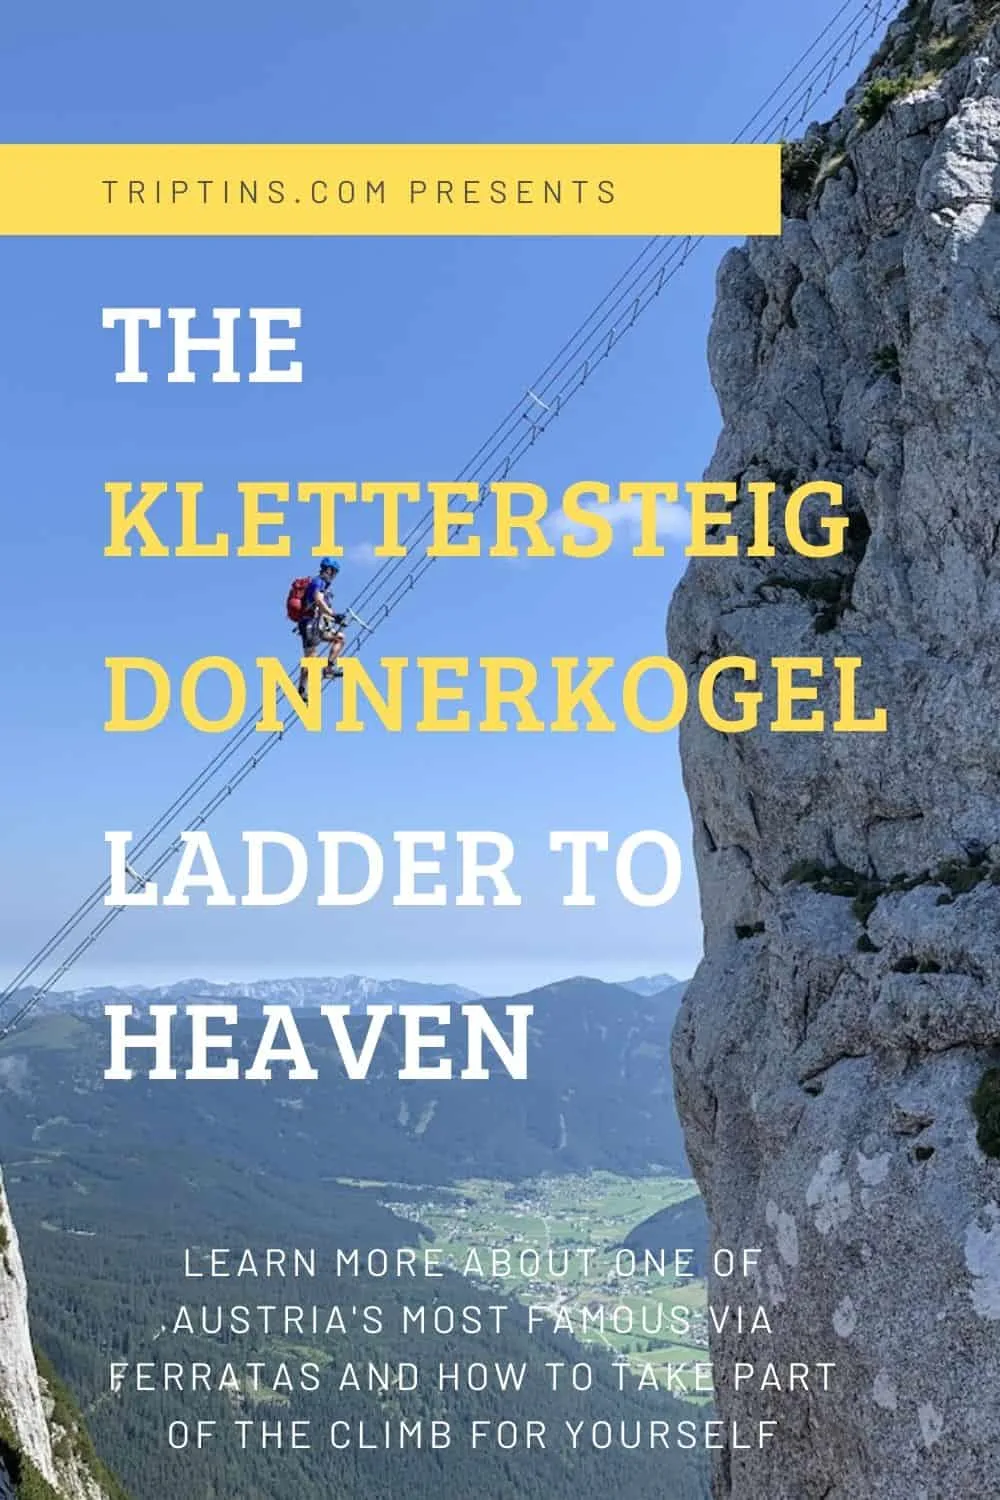 The Klettersteig Donnerkogel